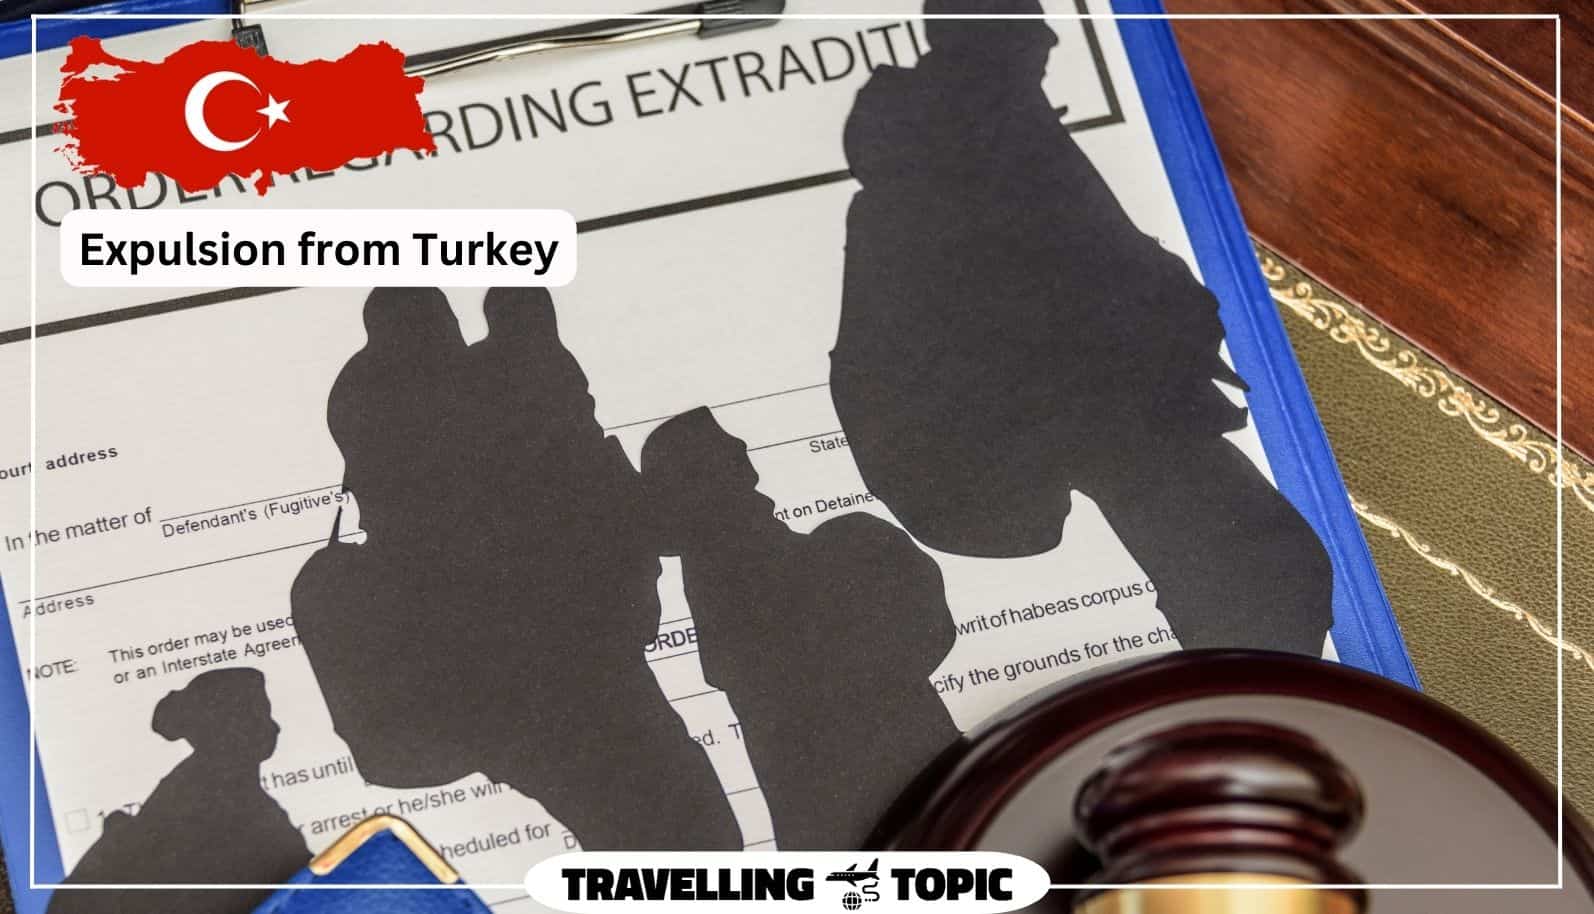 Expulsion from Turkey